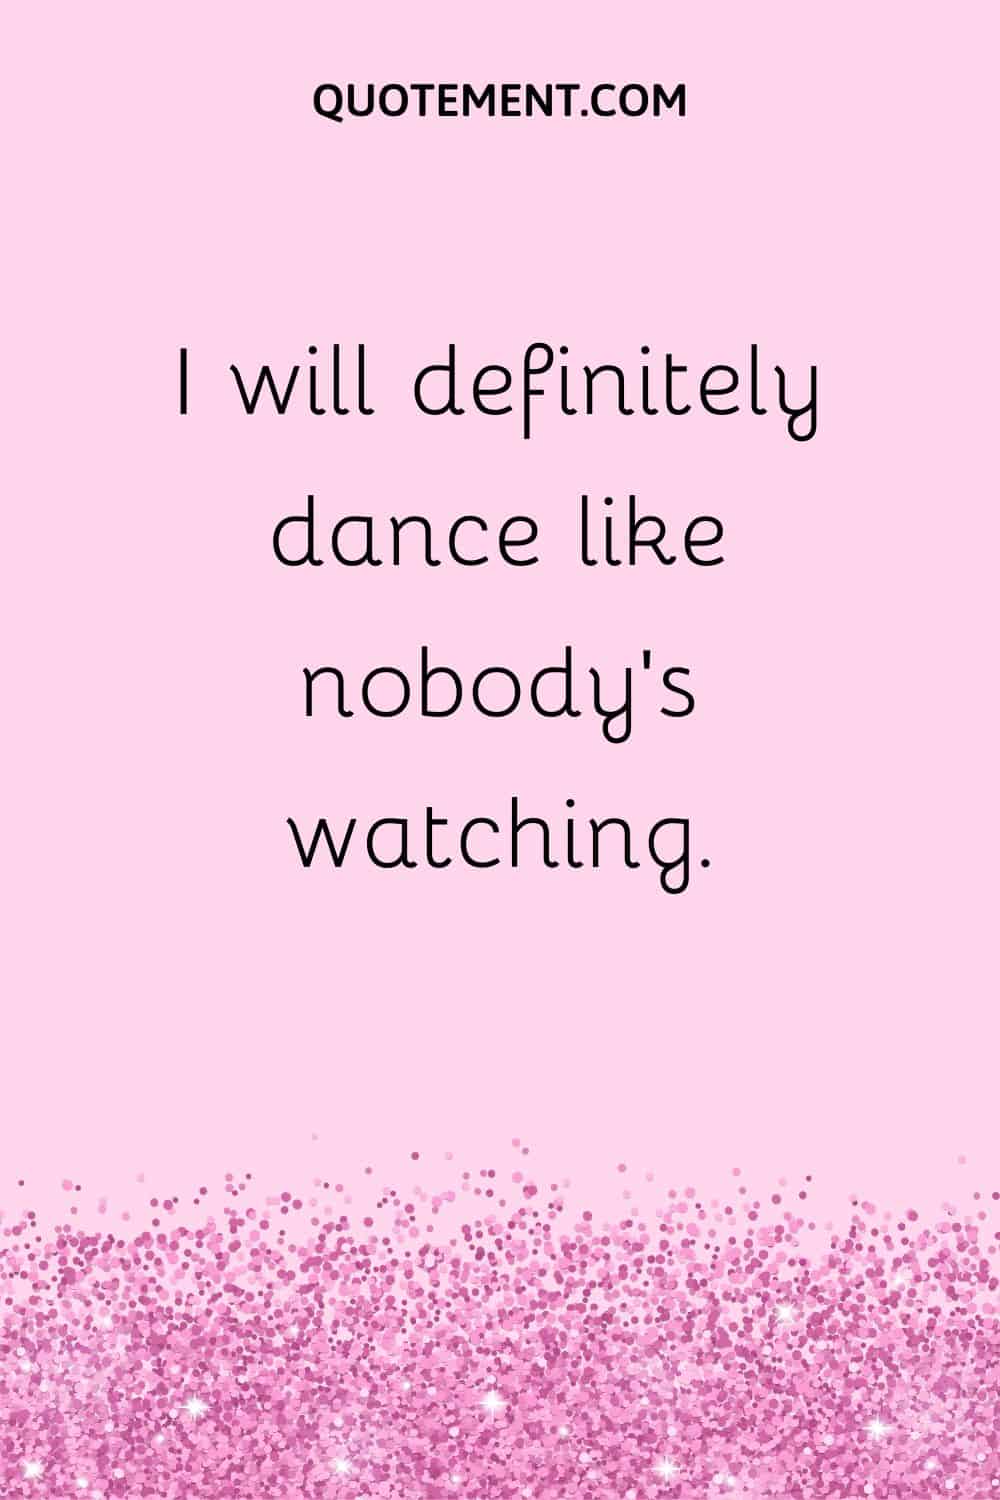 I will definitely dance like nobody’s watching.